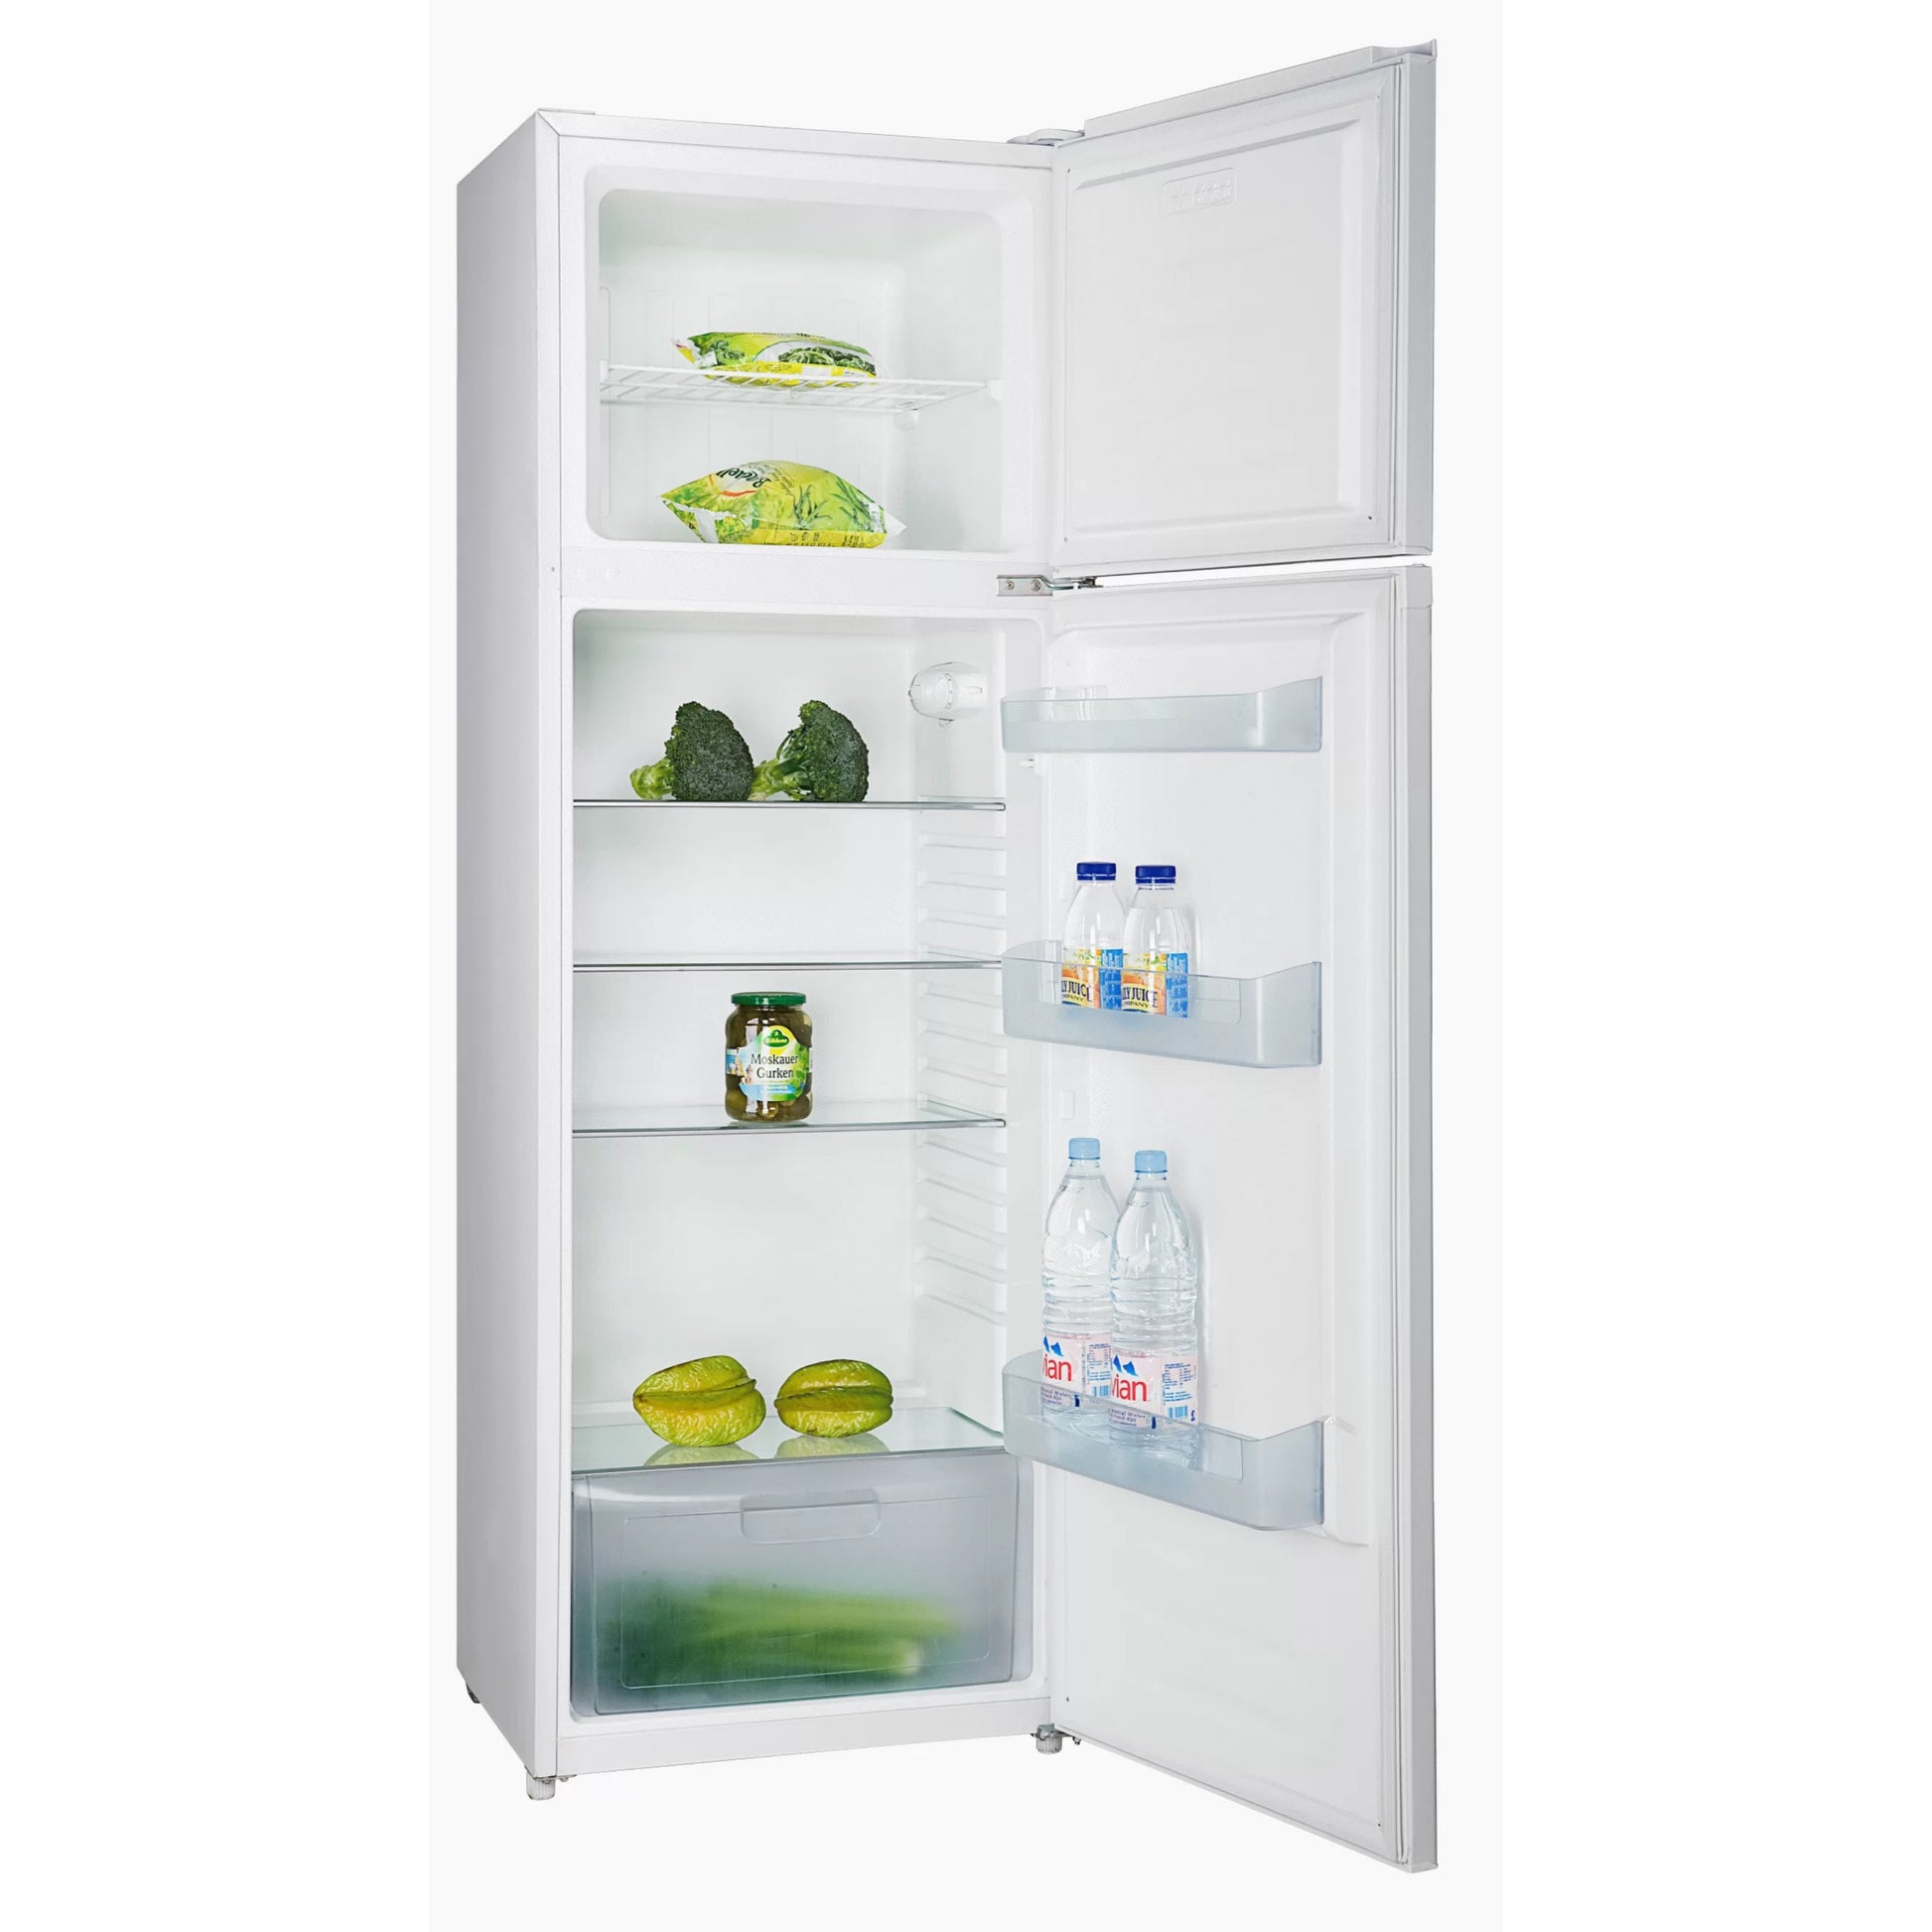 Hisense REF302DR Double Door Refrigerator - Open door